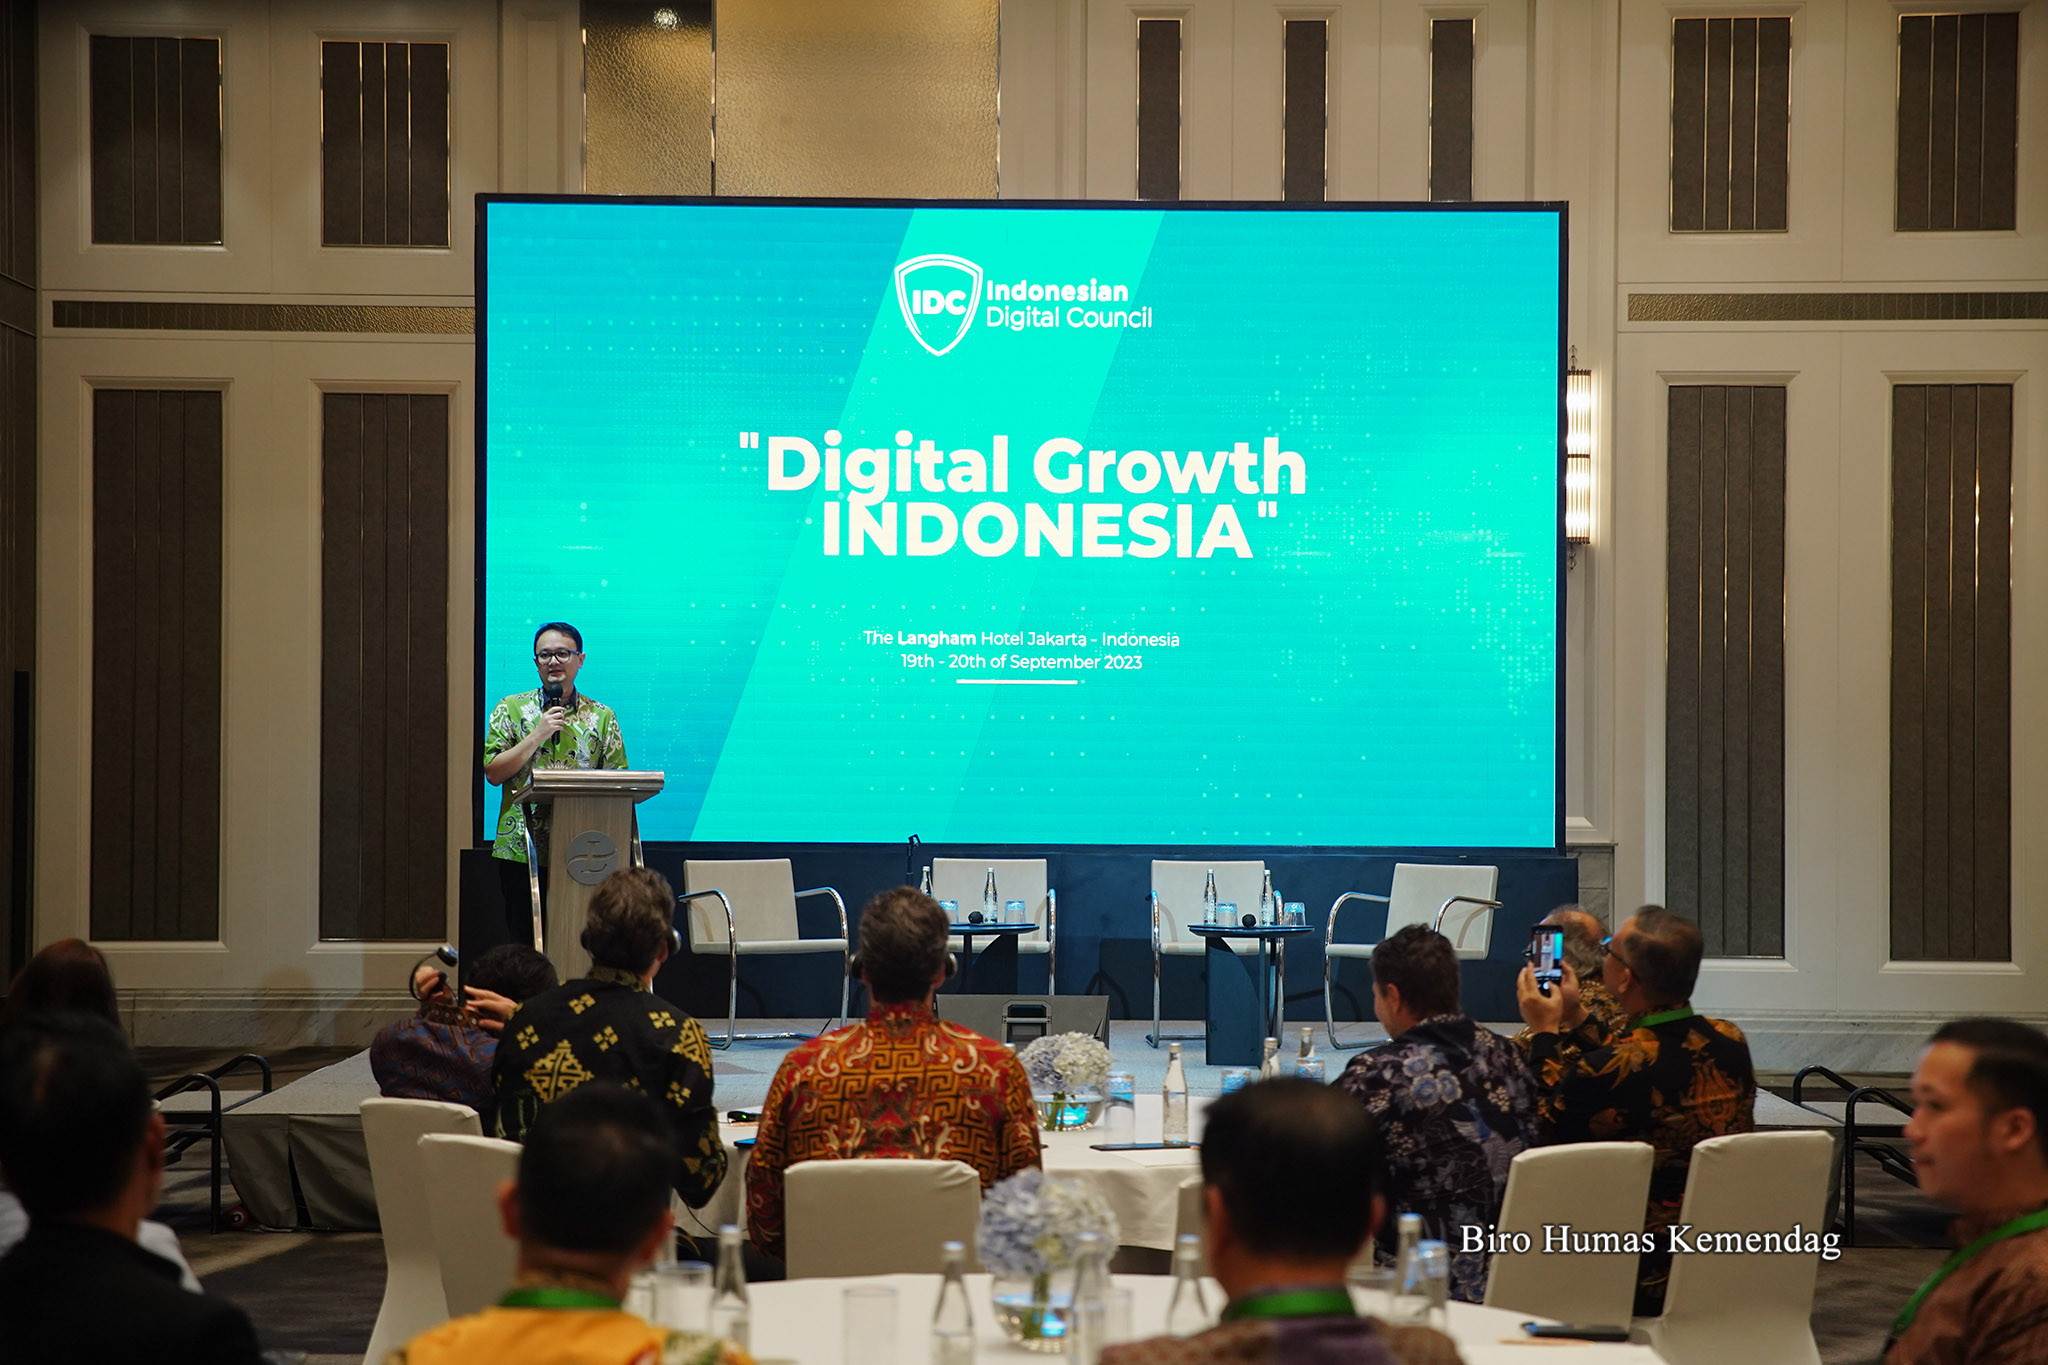 Wamendag Jadi Pembicara Utama pada Digital Growth Indonesia ...